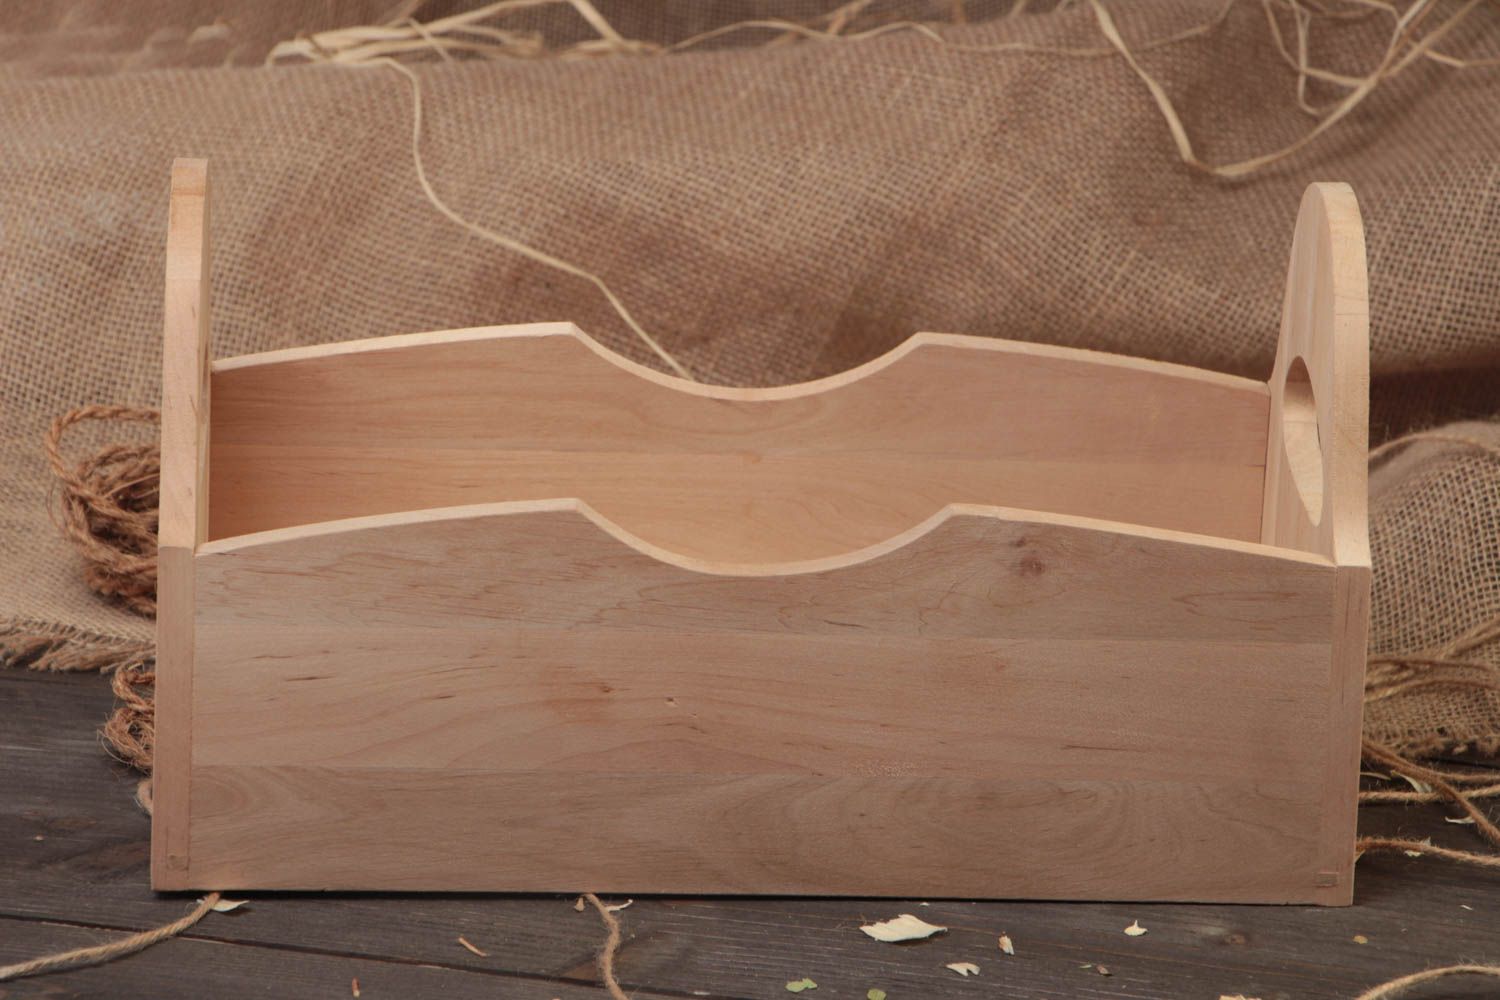 Заготовка для ящика из древесины ольхи ручной работы под роспись или декупаж фото 1